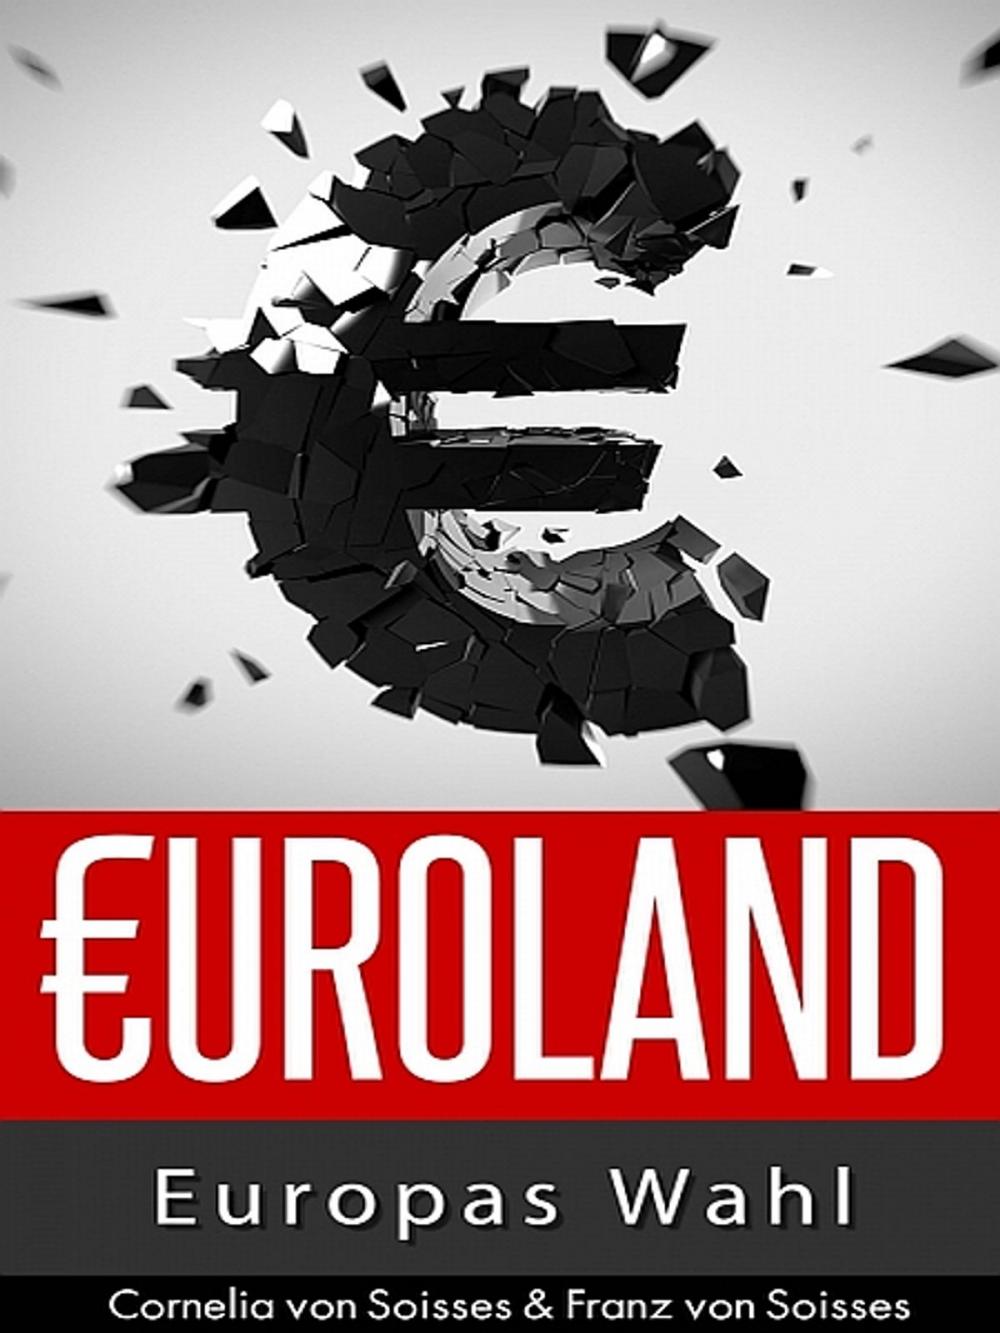 Big bigCover of Euroland (5)